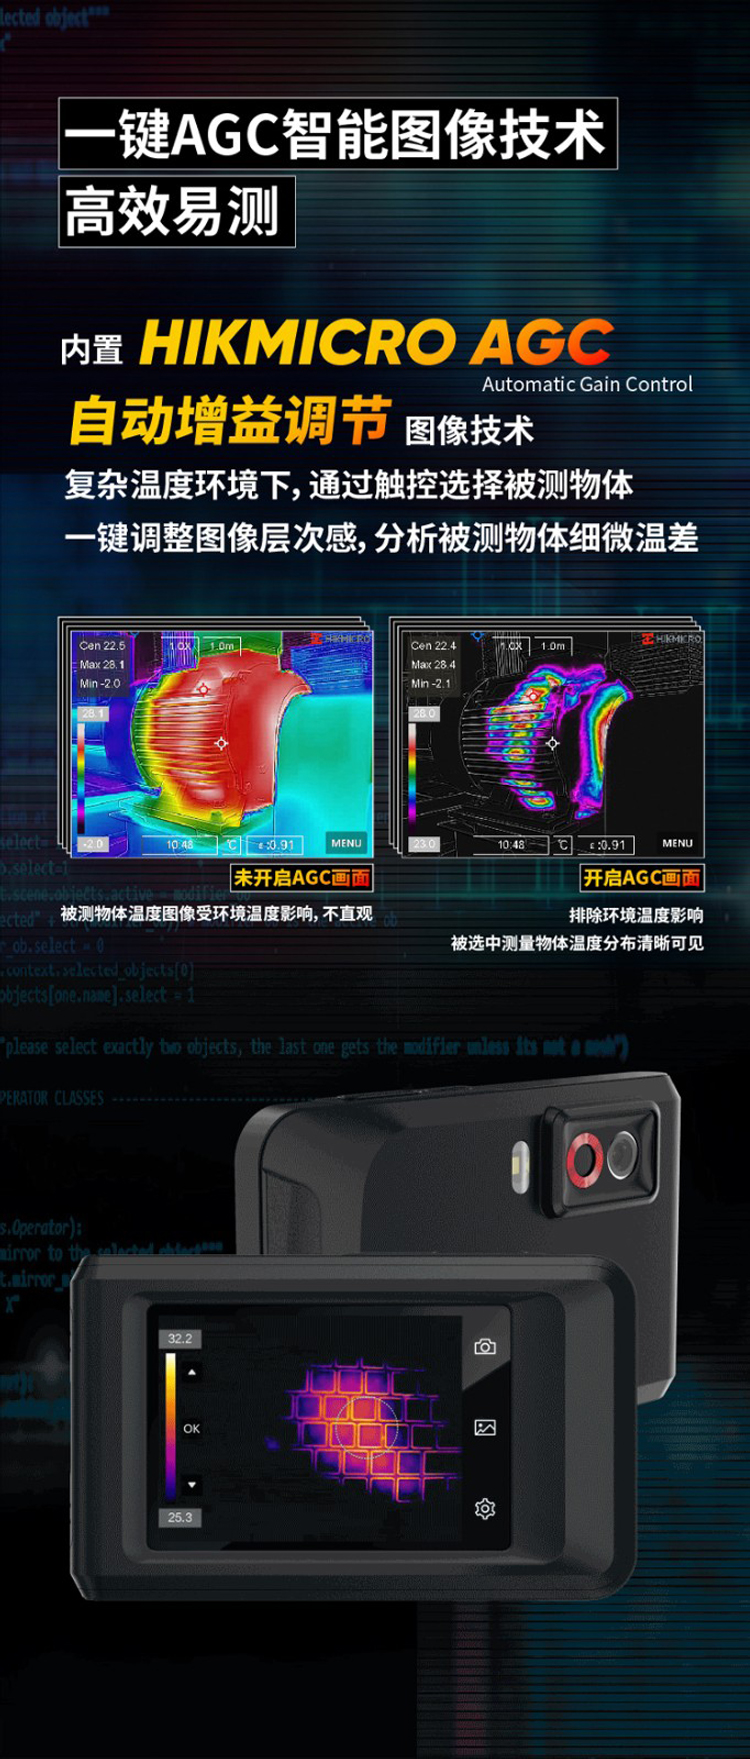 口袋机K20便携式热像仪(图5)